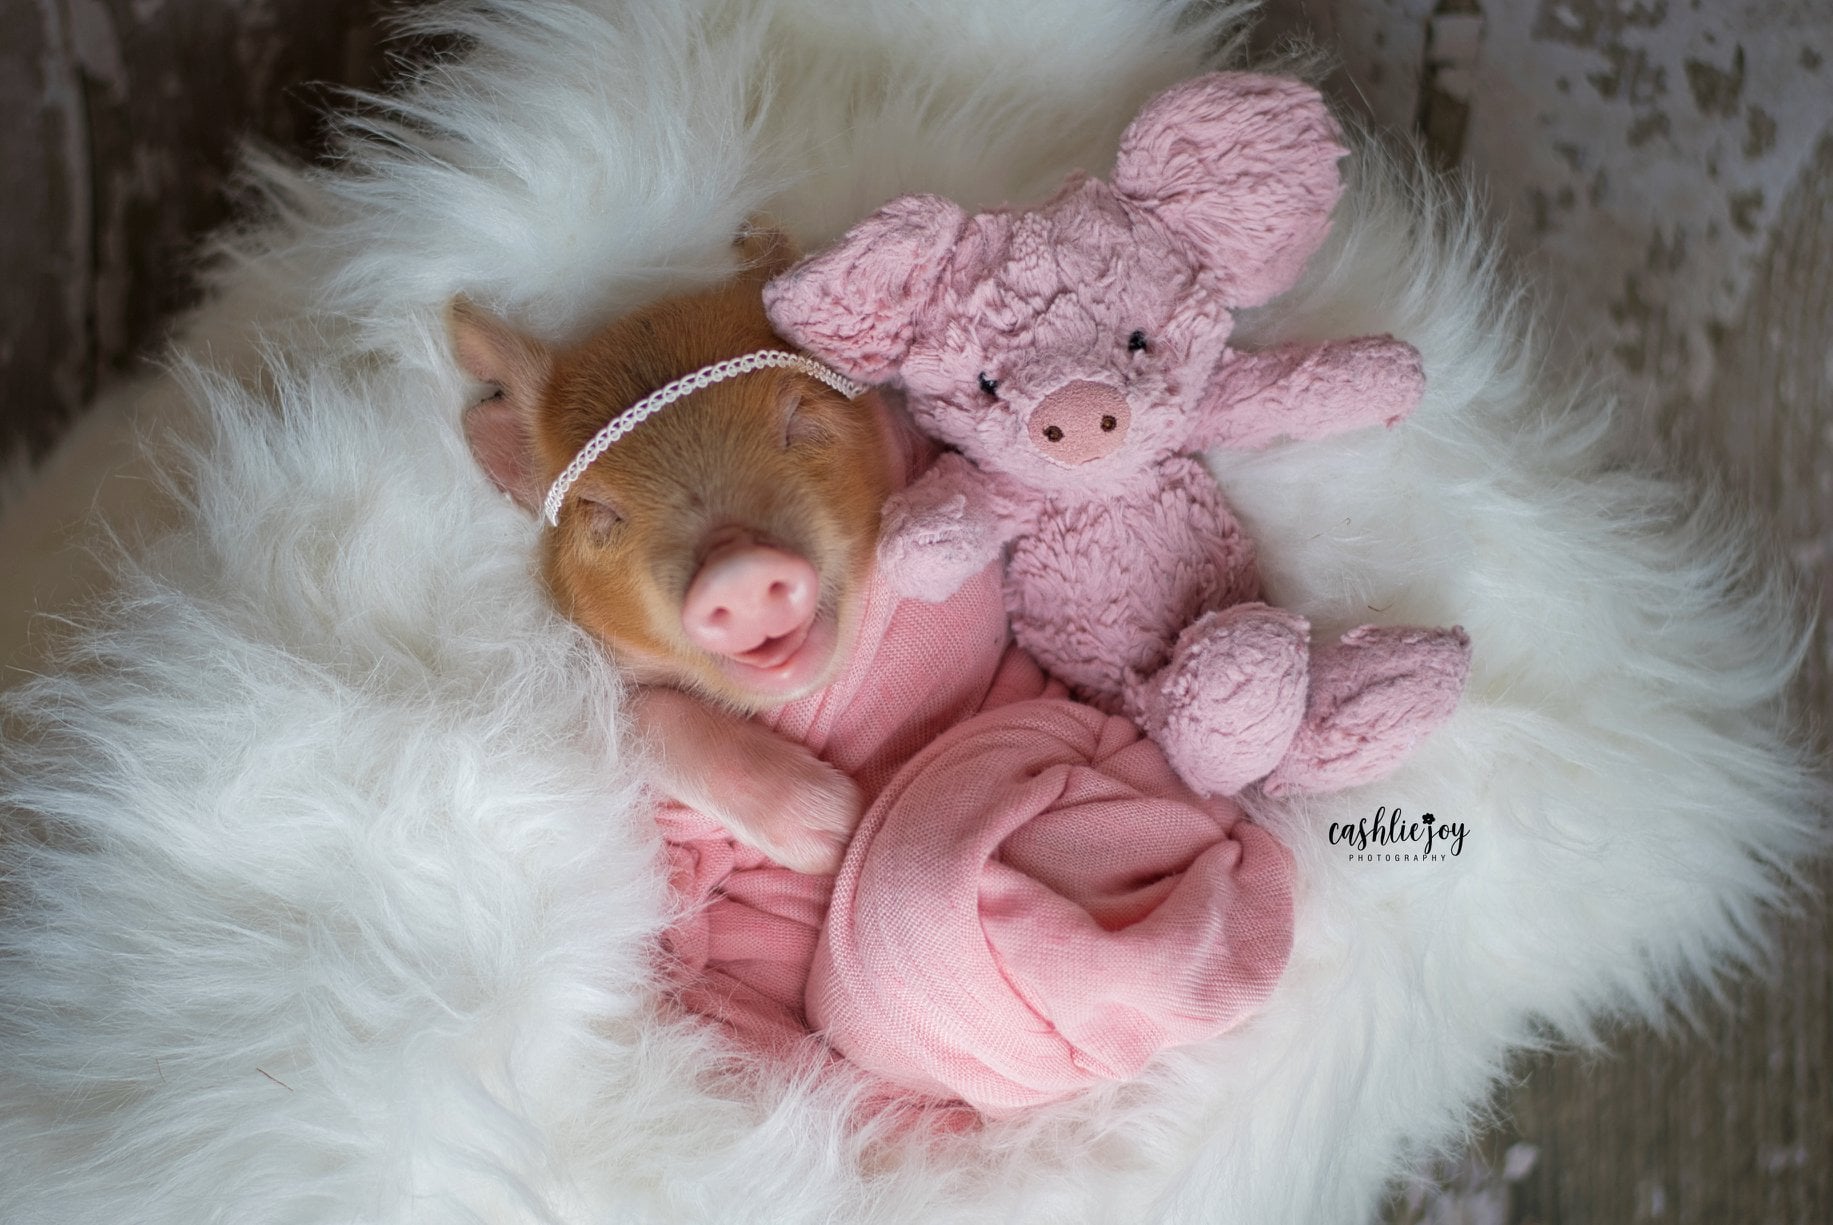 cute baby piglet